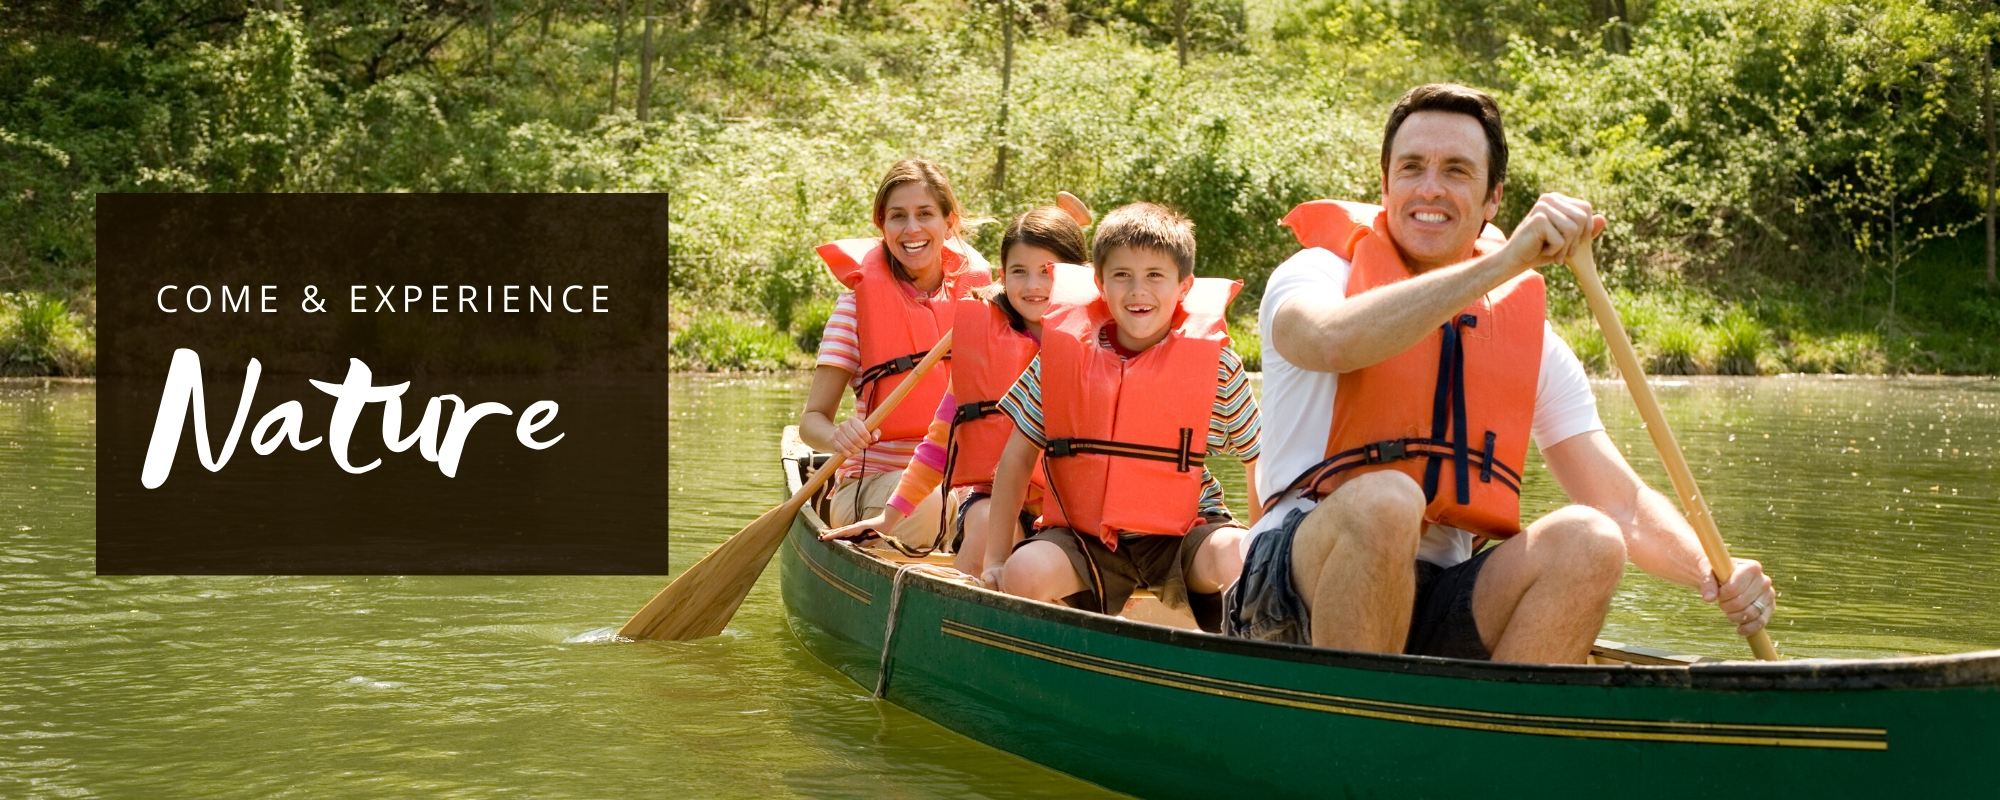 Family on a canoe 